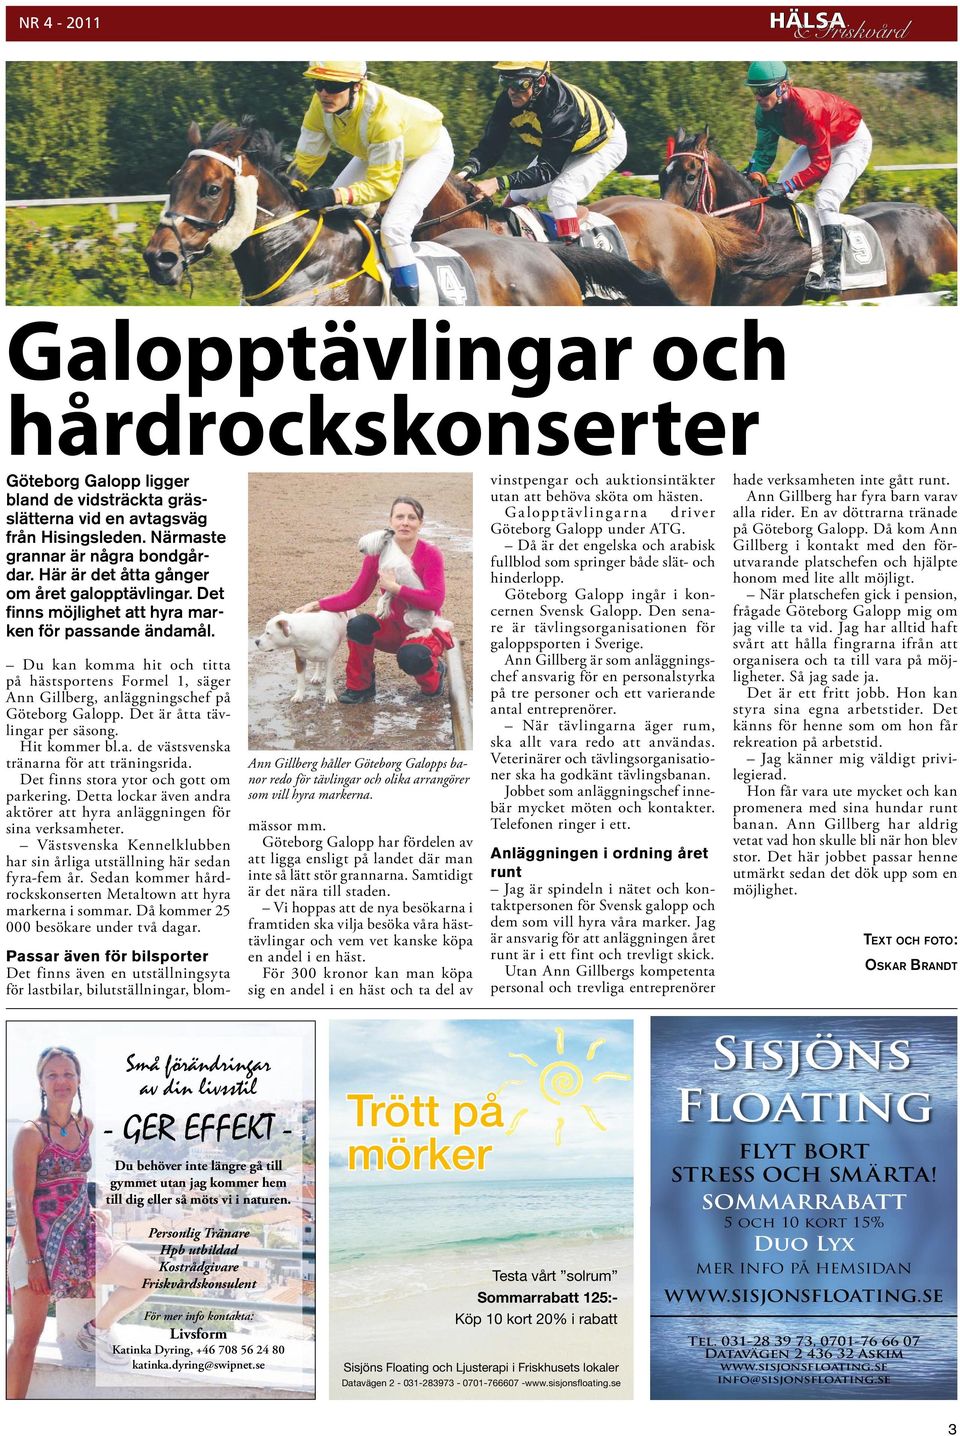 Du kan komma hit och titta på hästsportens Formel 1, säger Ann Gillberg, anläggningschef på Göteborg Galopp. Det är åtta tävlingar per säsong. Hit kommer bl.a. de västsvenska tränarna för att träningsrida.